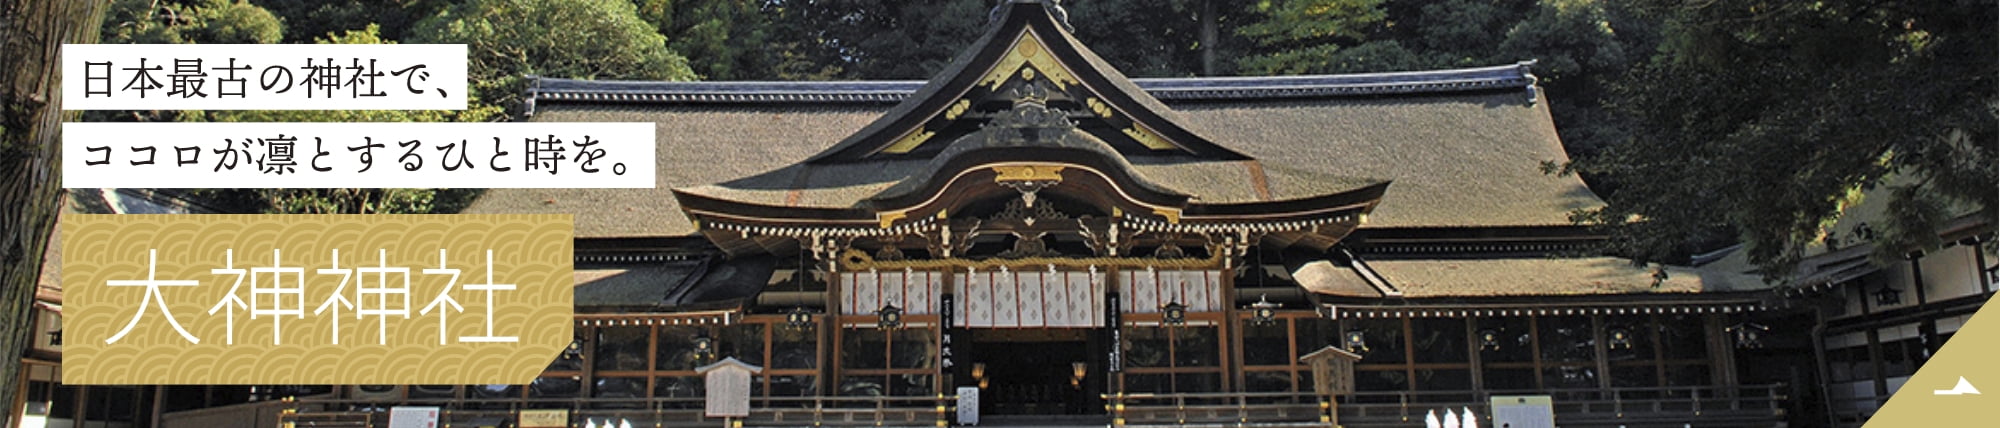 日本最古の神社で、ココロが凛とするひと時を。大神神社